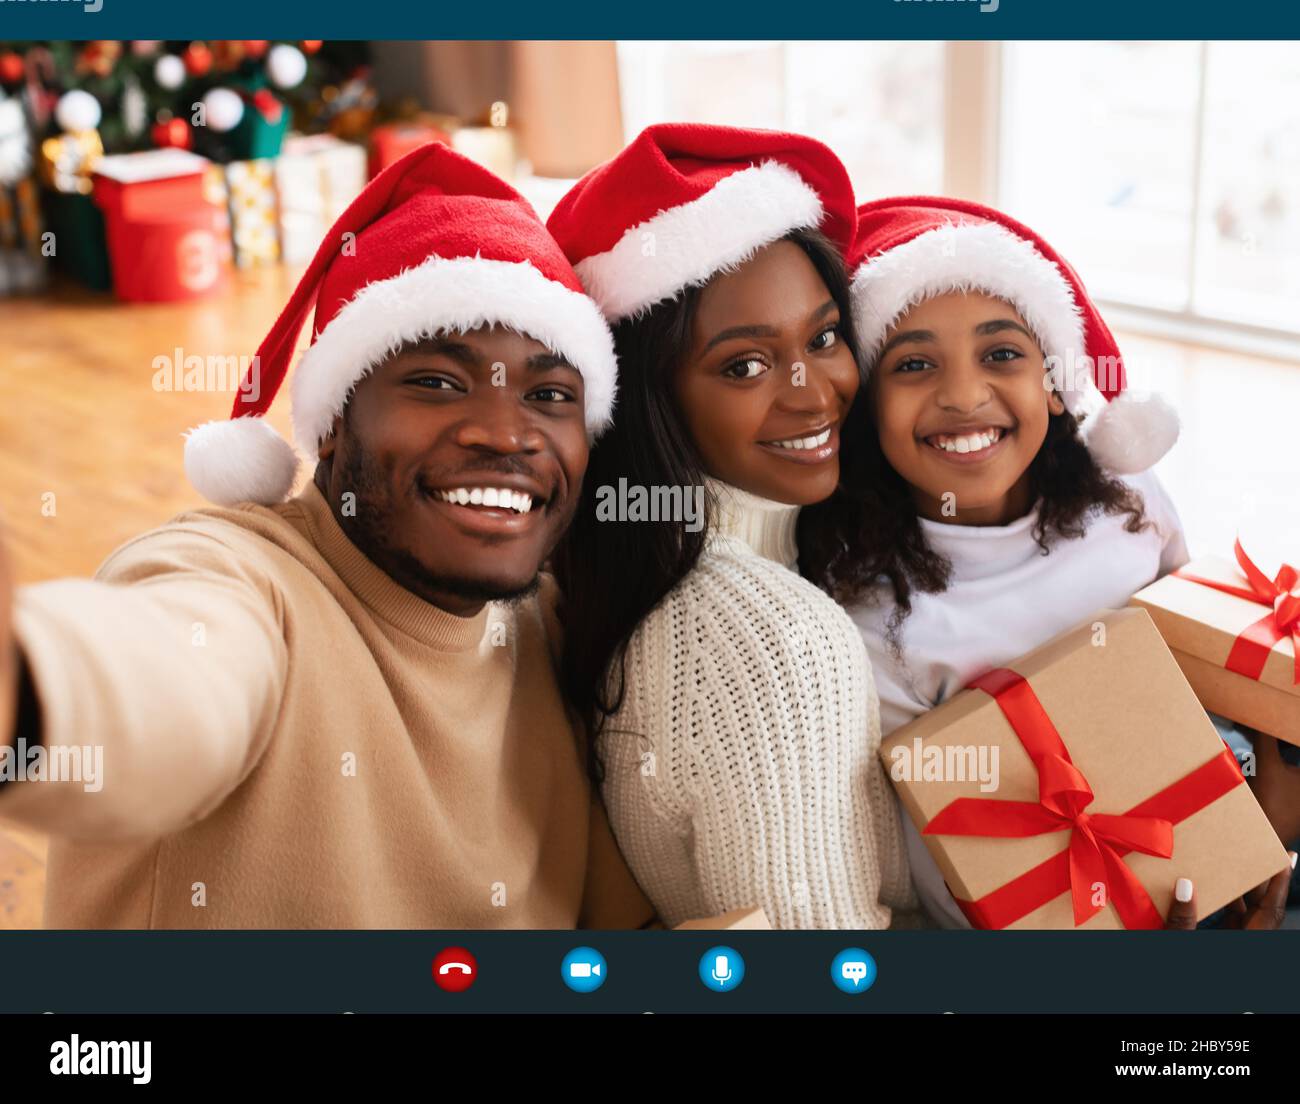 Capture d'écran de la famille africaine appel vidéo célébrant Noël à la maison Banque D'Images